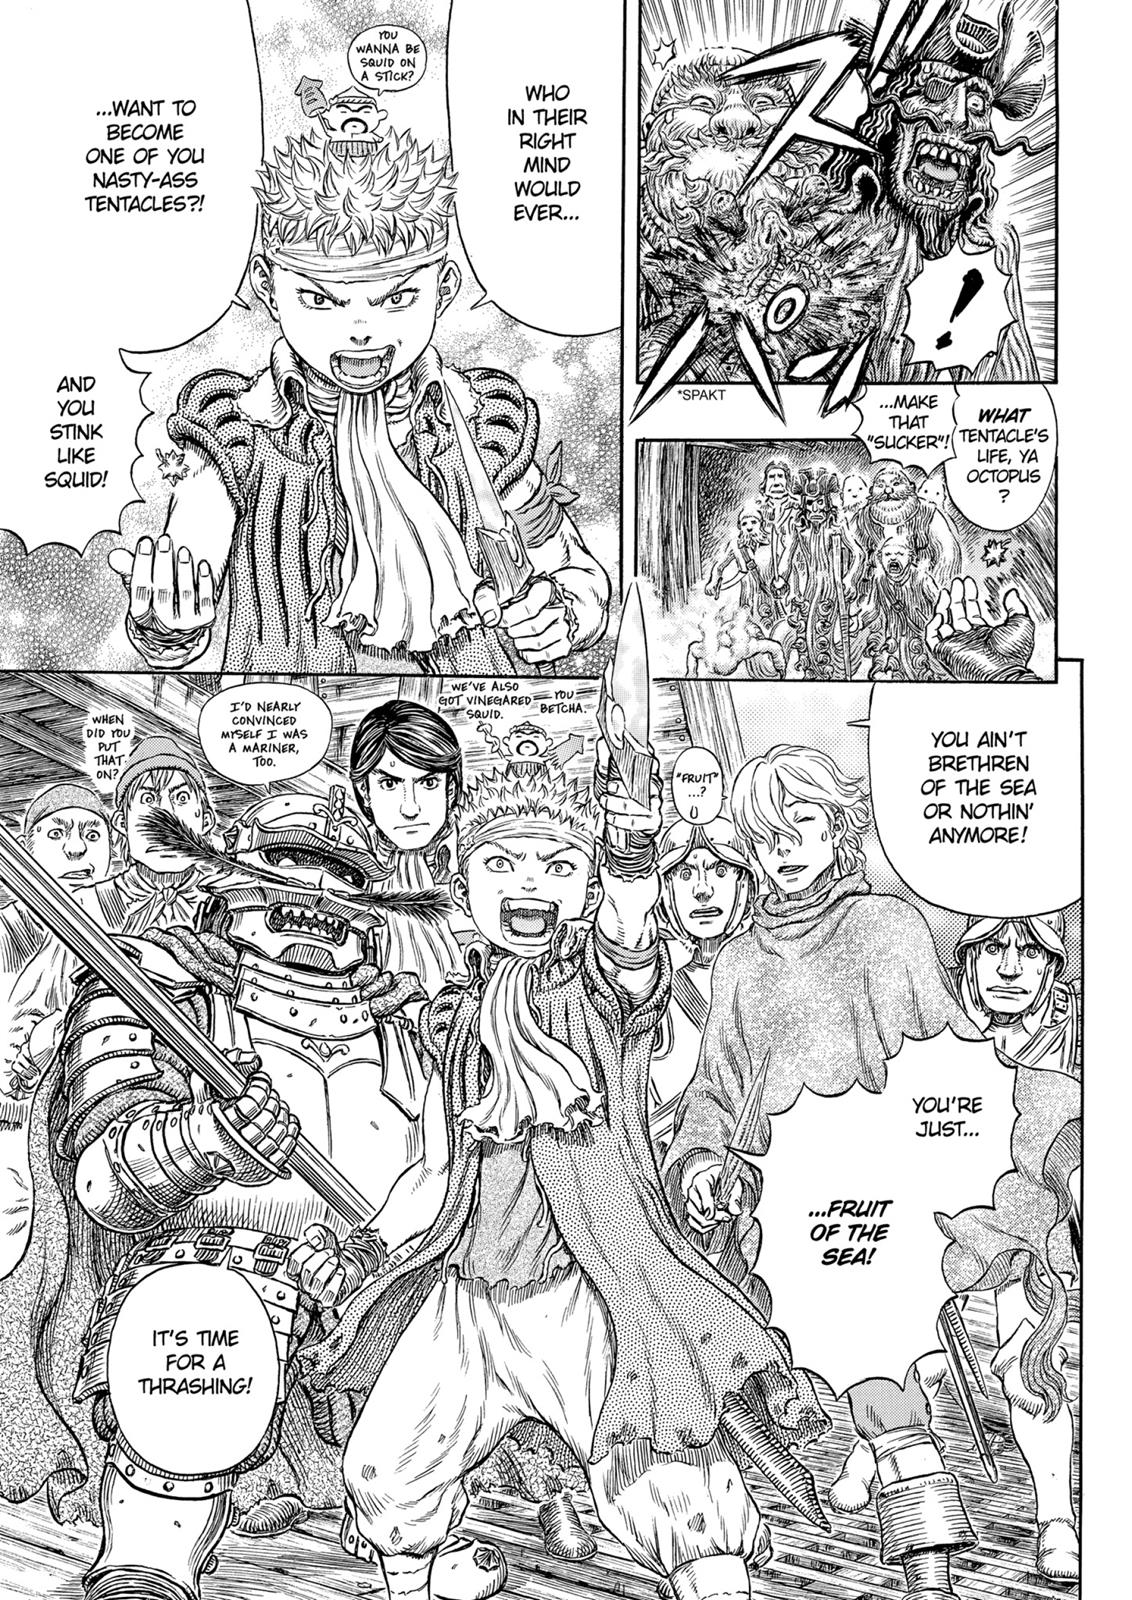 Berserk Manga Chapter 321 image 09